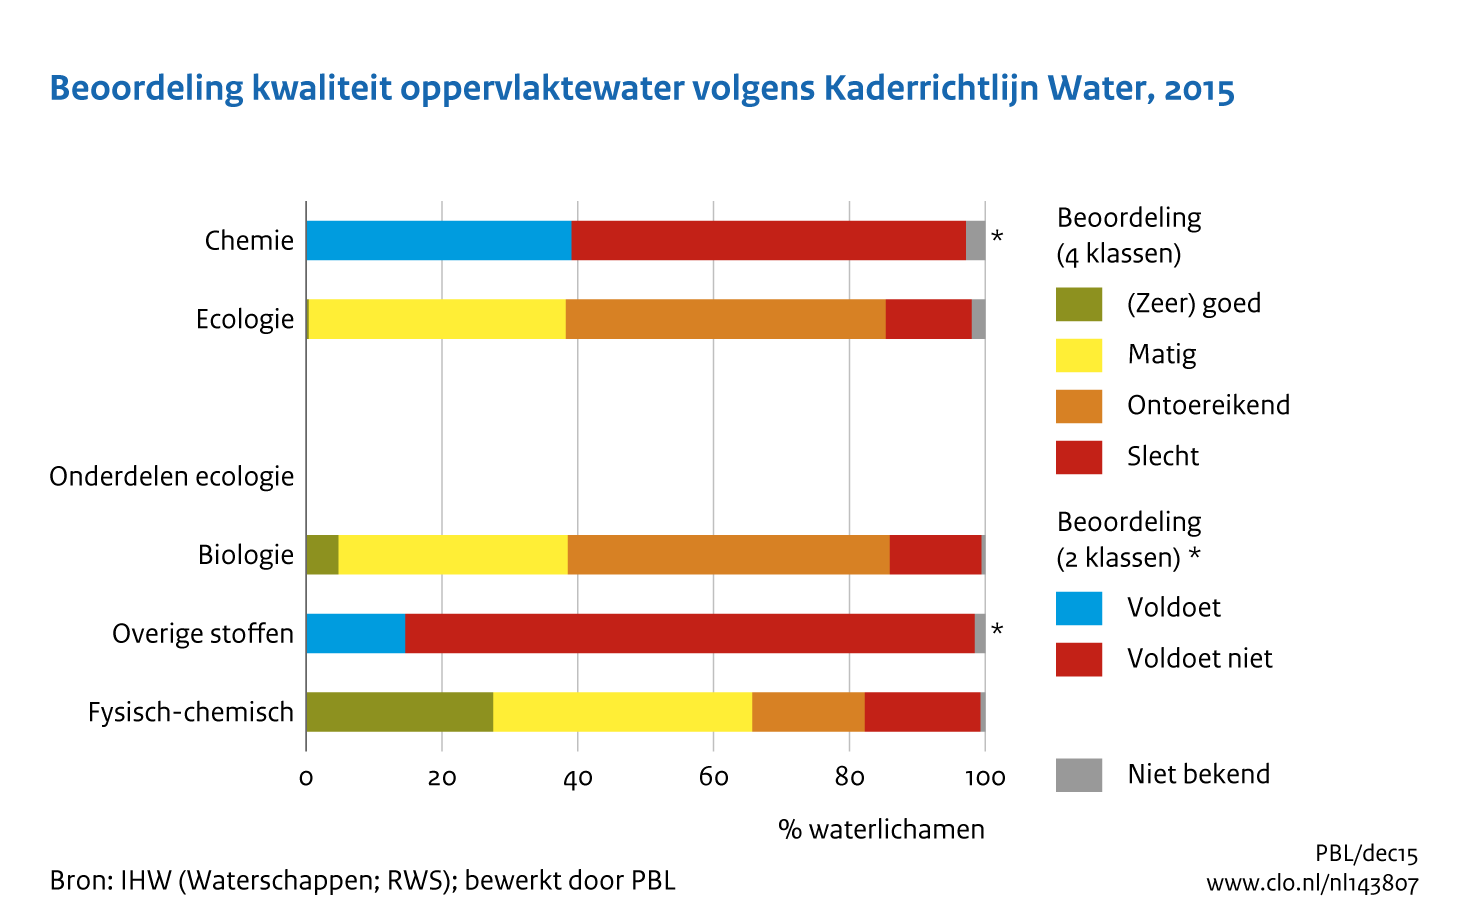 Figuur Beoordeling waterkwaliteit in KRW . In de rest van de tekst wordt deze figuur uitgebreider uitgelegd.